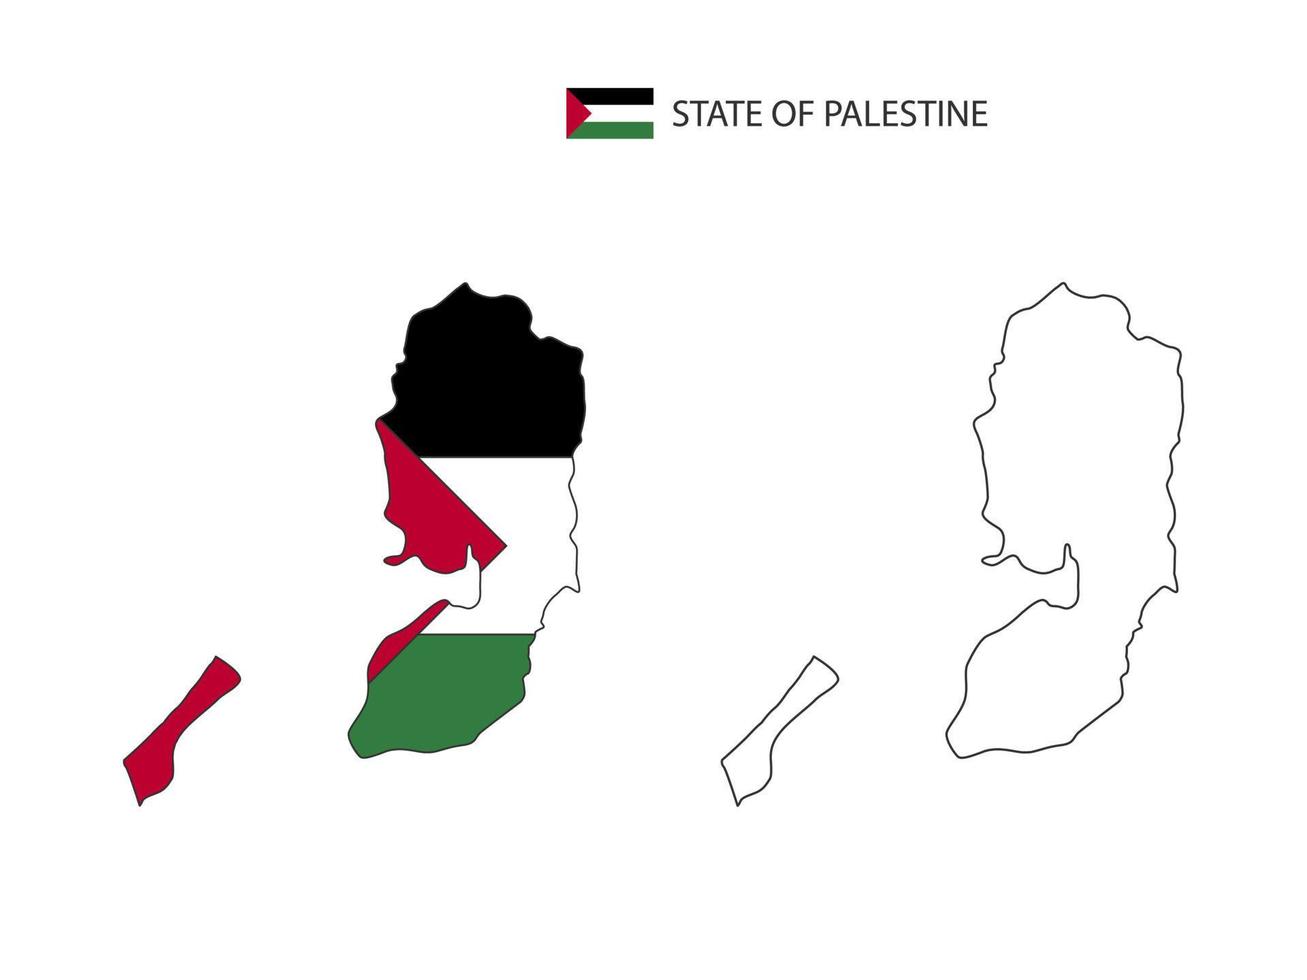 Bundesstaat Palästina Karte Stadtvektor geteilt durch Umriss-Einfachheitsstil. haben 2 Versionen, eine schwarze Version mit dünner Linie und eine Version in der Farbe der Landesflagge. beide Karten waren auf dem weißen Hintergrund. vektor